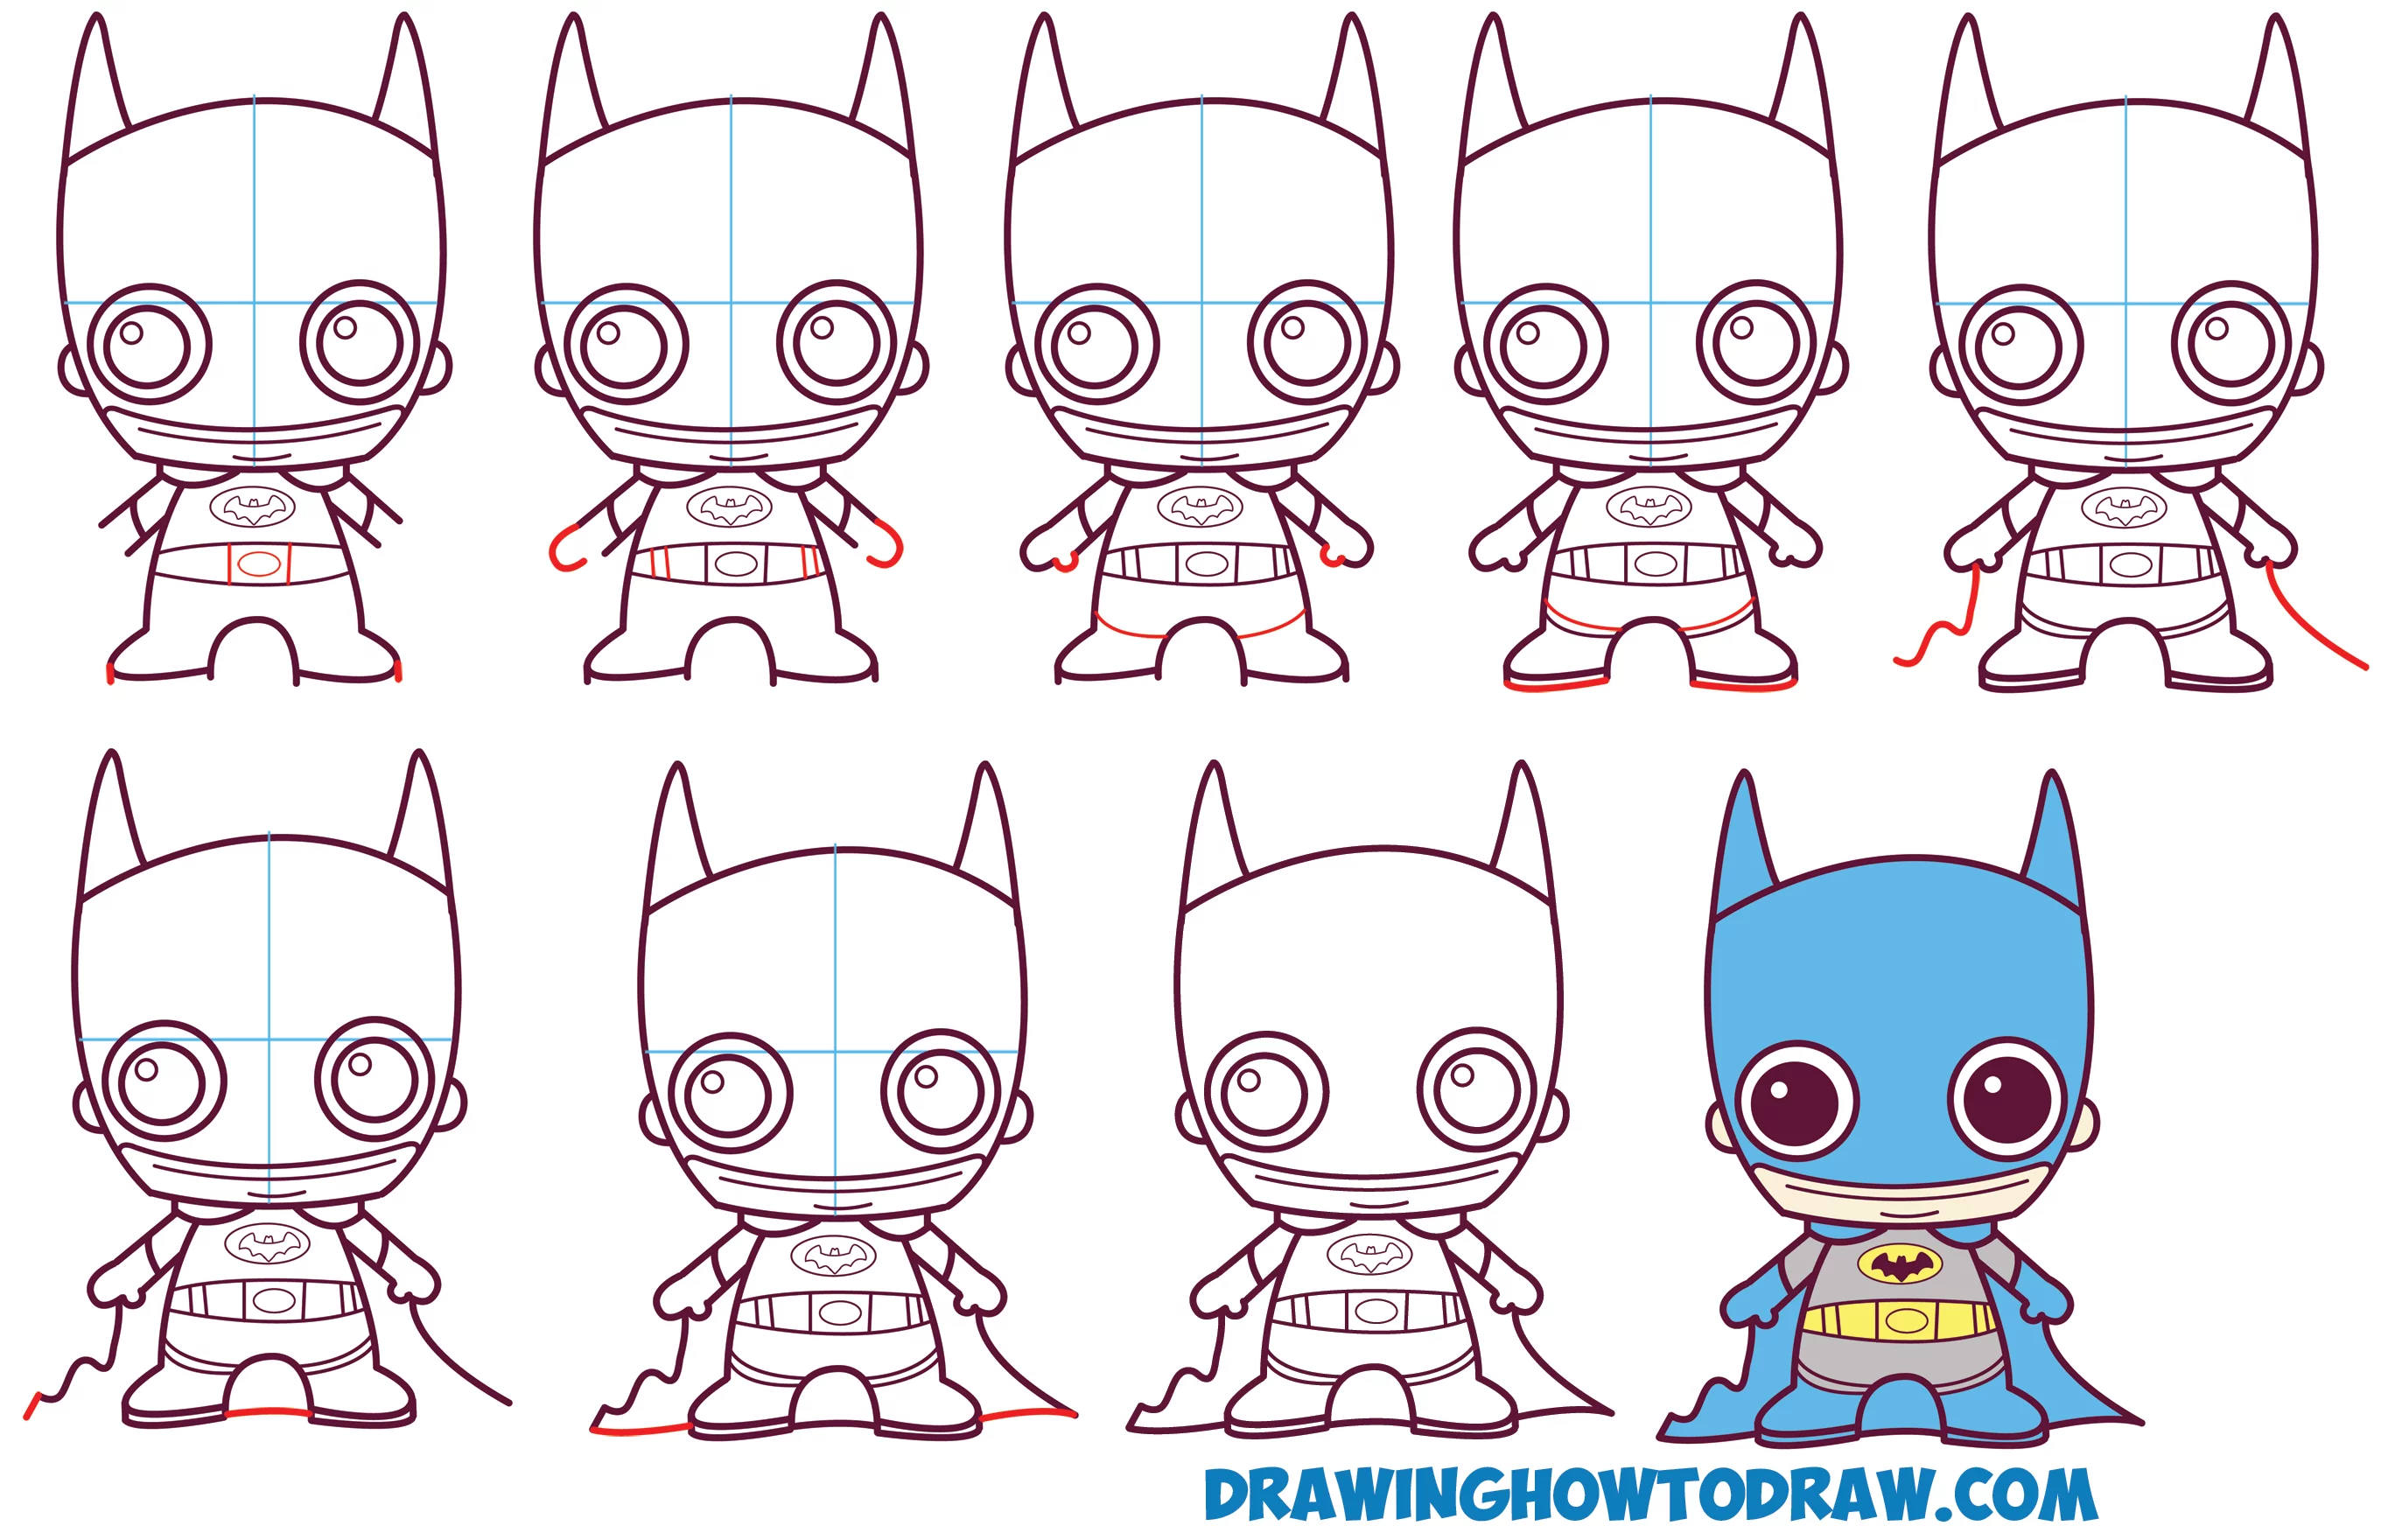 Imparare a Disegnare Carino / Bambino / Kawaii / Chibi Batman di DC Comics in Semplici Passi Lezione di Disegno per Bambini